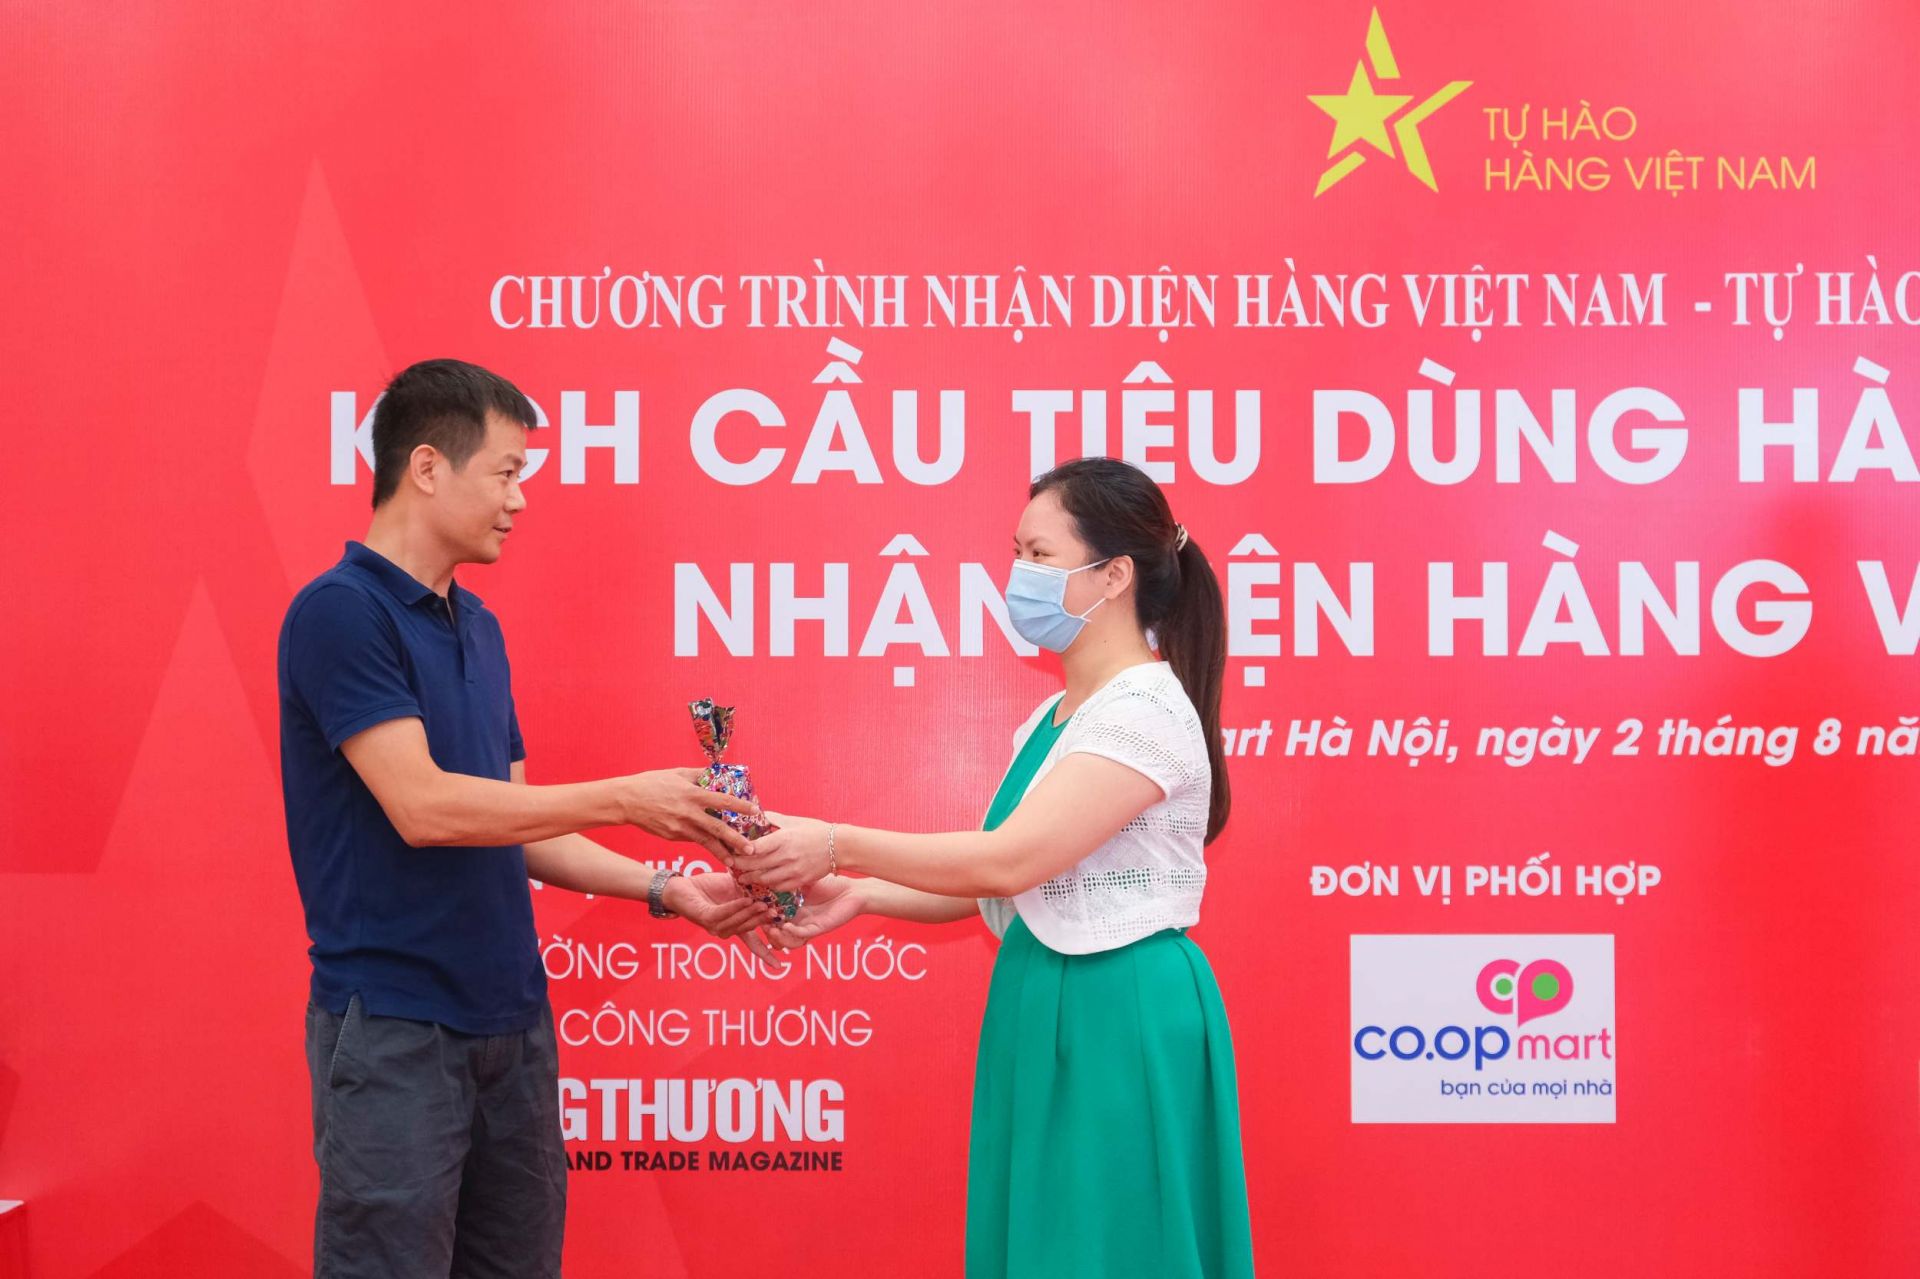 Hoạt động minigame có thưởng, giao lưu trực tiếp với người tiêu dùng nhằm nâng cao nhận thức xã hội đối với sản phẩm hàng Việt